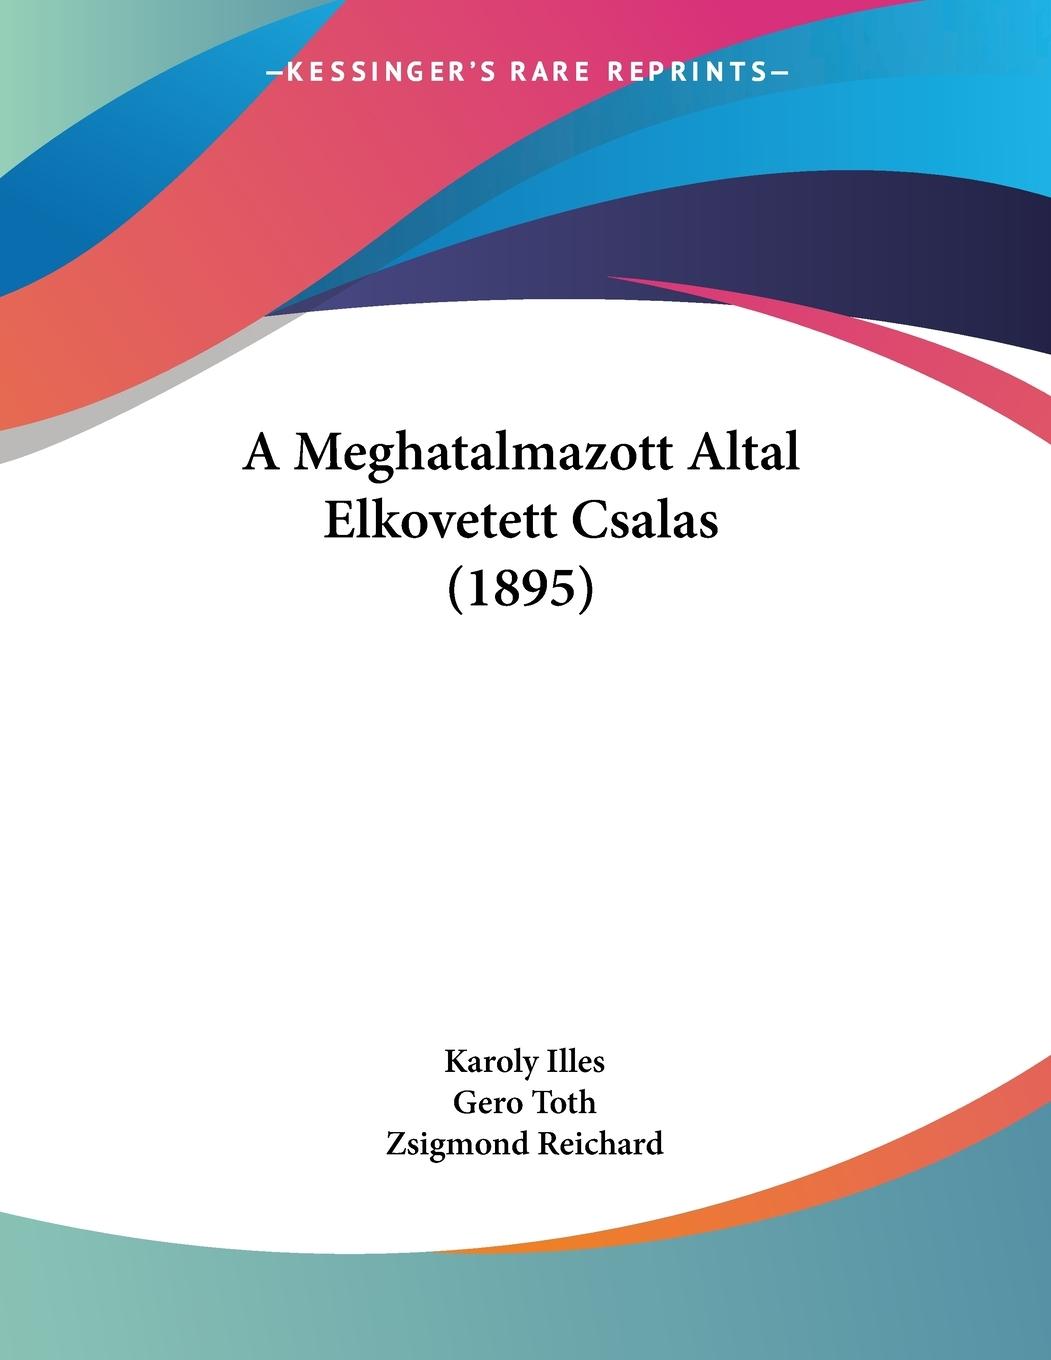 A Meghatalmazott Altal Elkovetett Csalas (1895) - Illes, Karoly Toth, Gero Reichard, Zsigmond